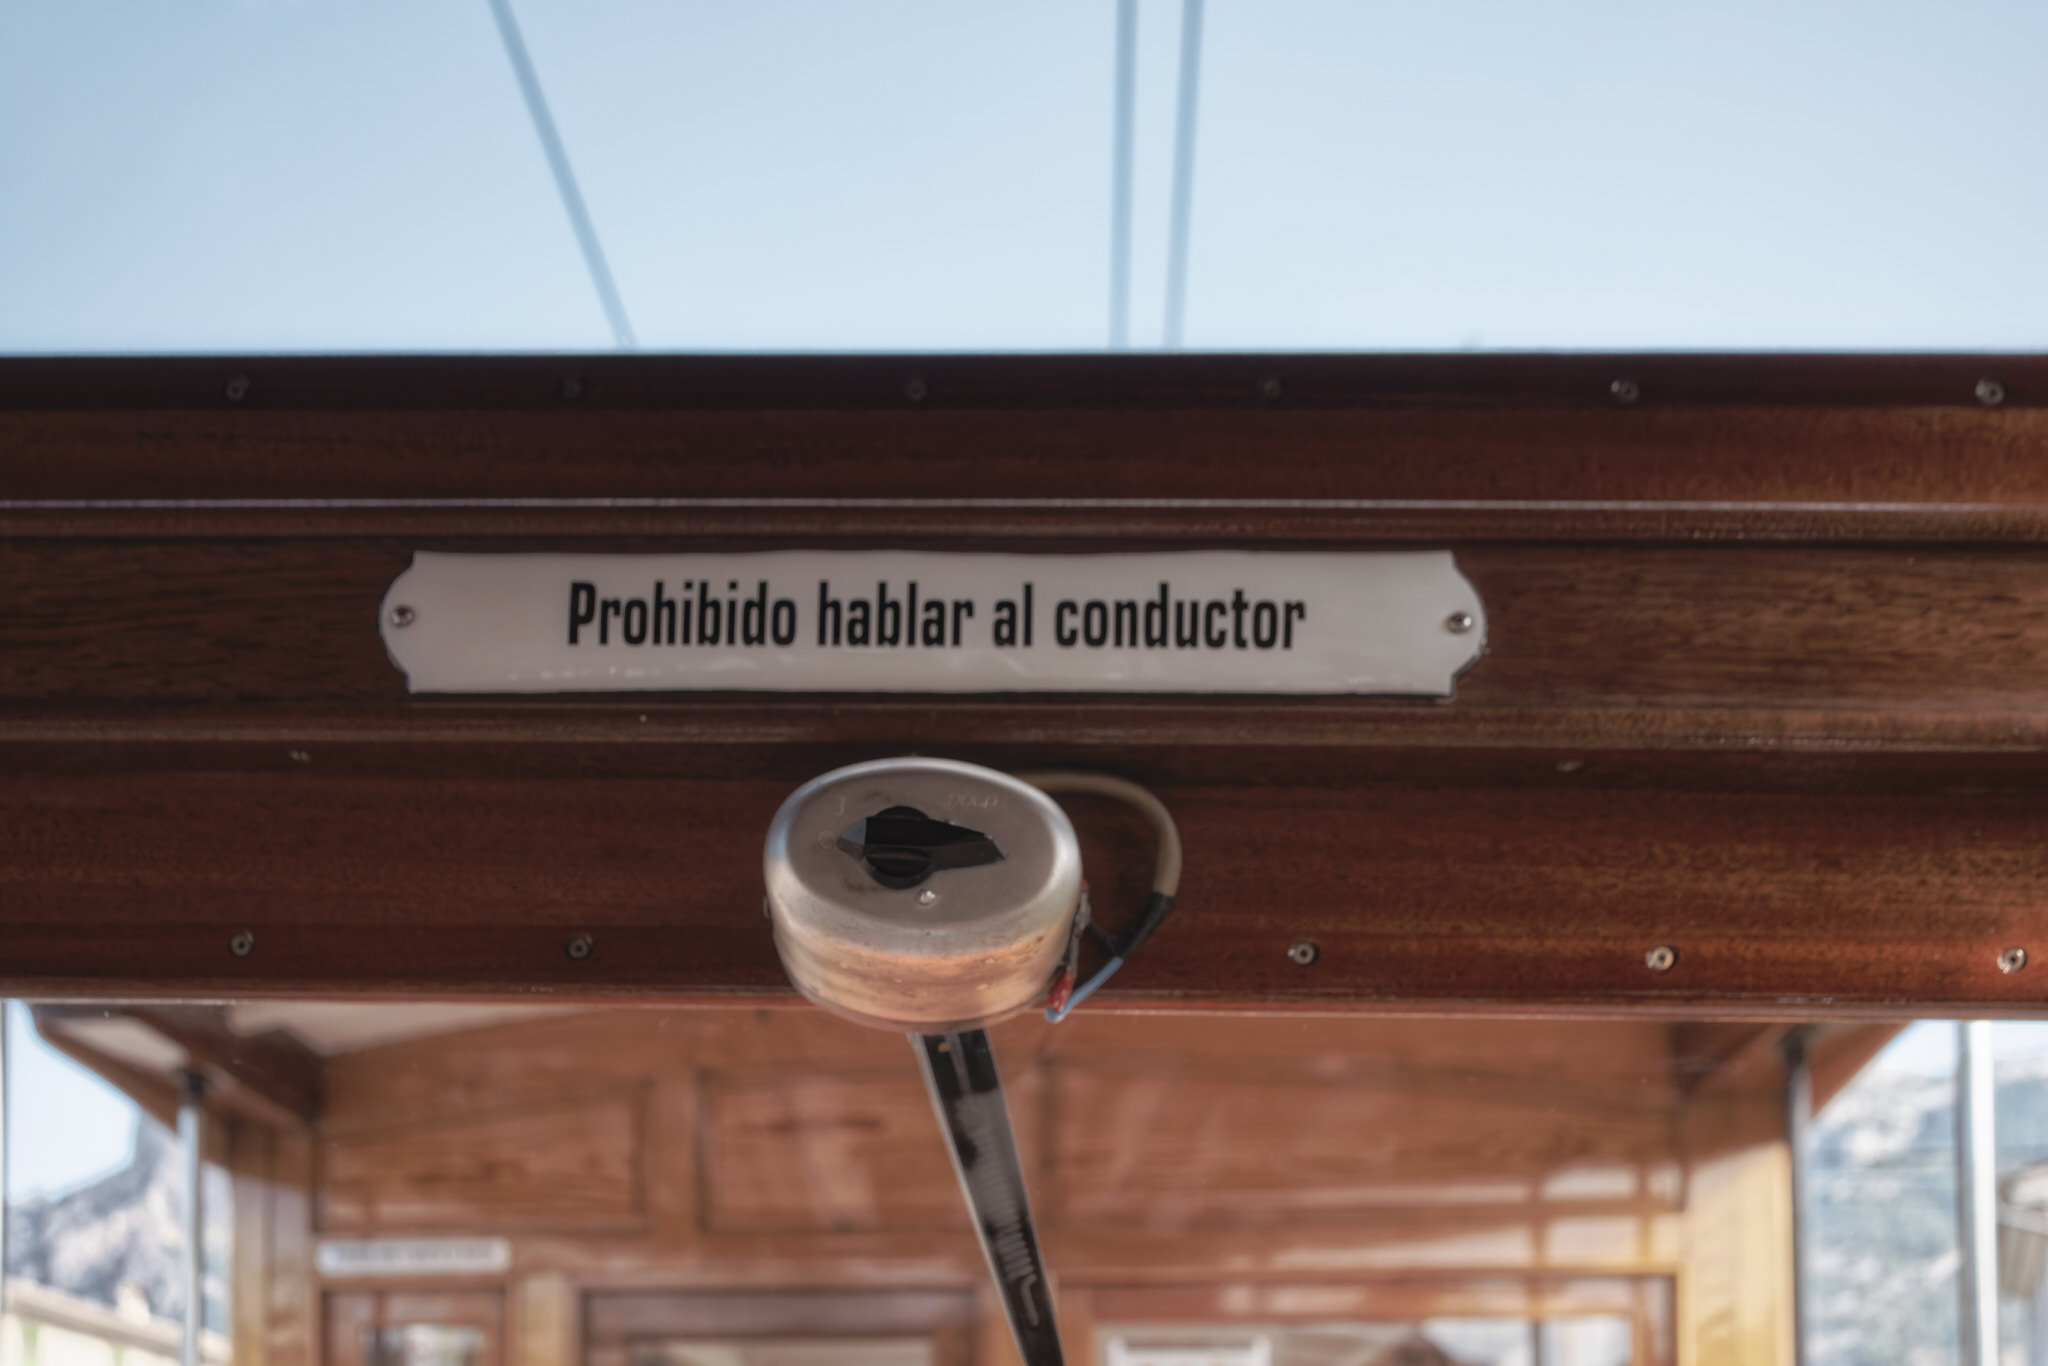 35.	Imagen de un cartel en el ferrocarril de Sóller que dice “prohibido hablar al conductor”